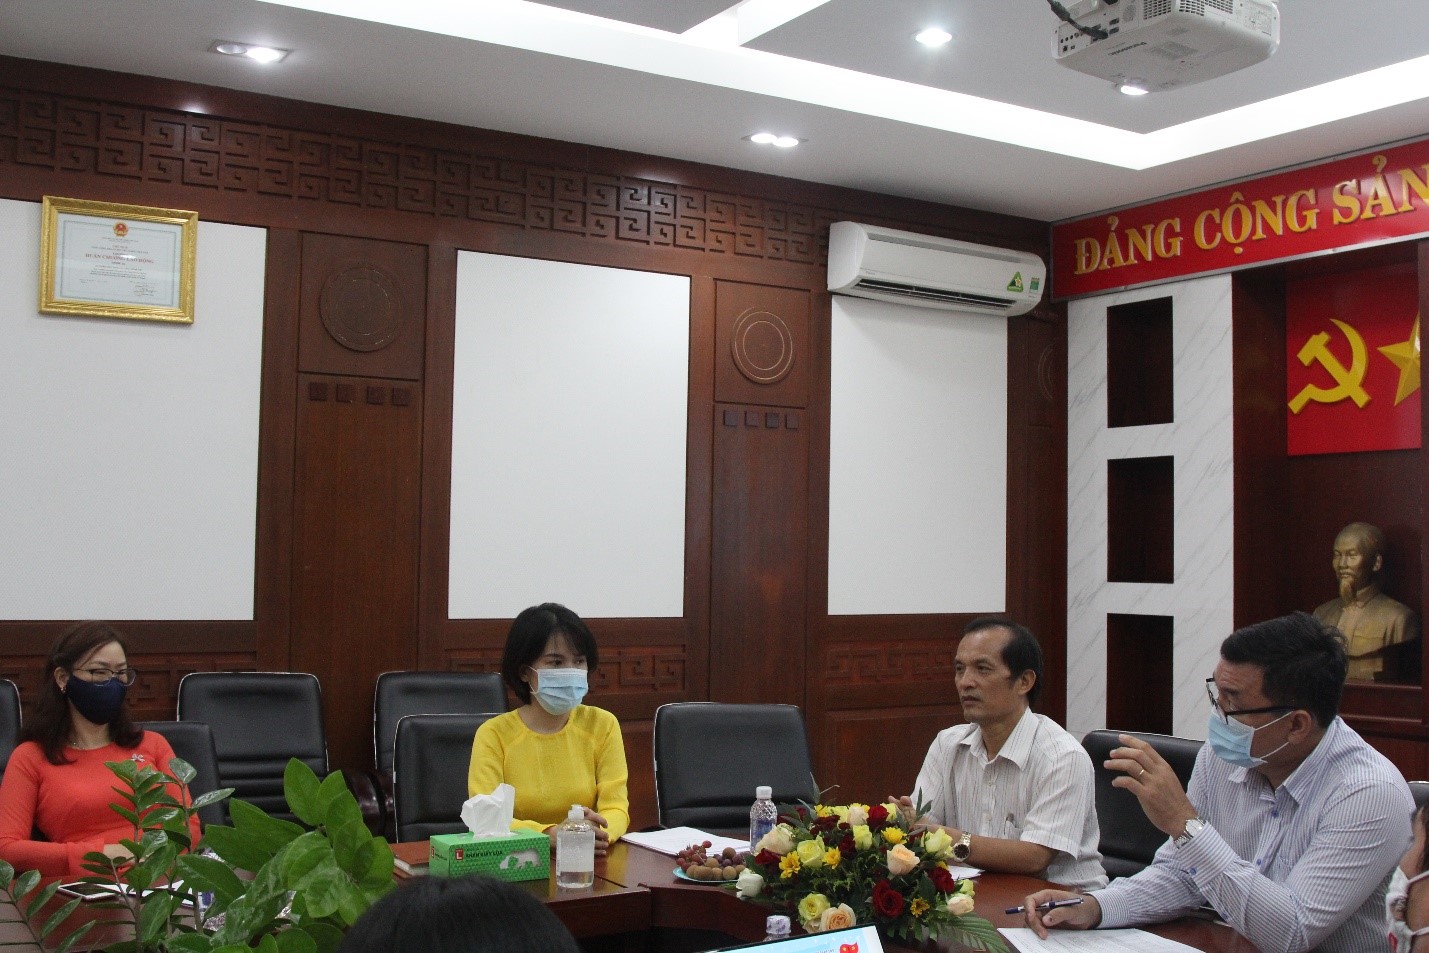 Đồng chí Nguyễn Thanh Phong – Phó Chủ tịch Công đoàn Vietsovpetro giải đáp các ý kiến của đại biểu.jpg